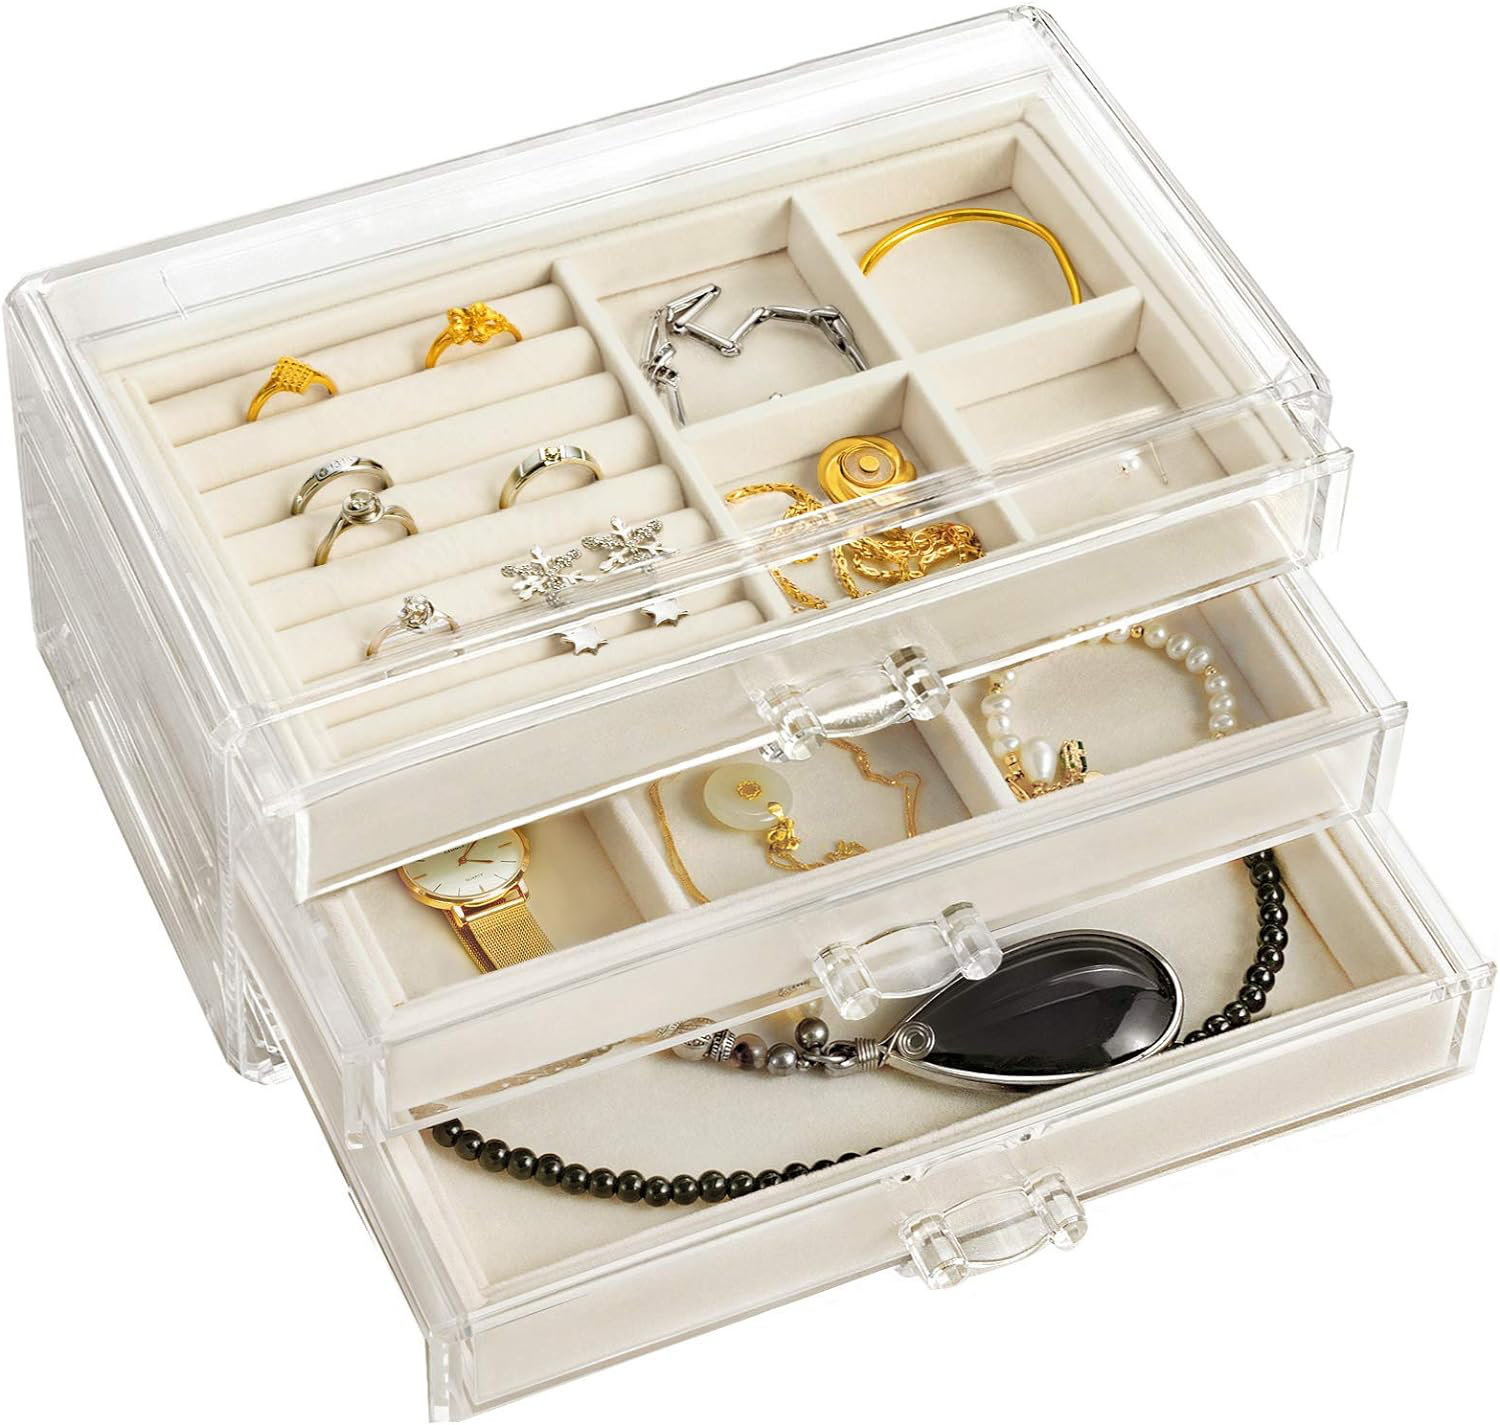 Mercer41 Jewelry Box +